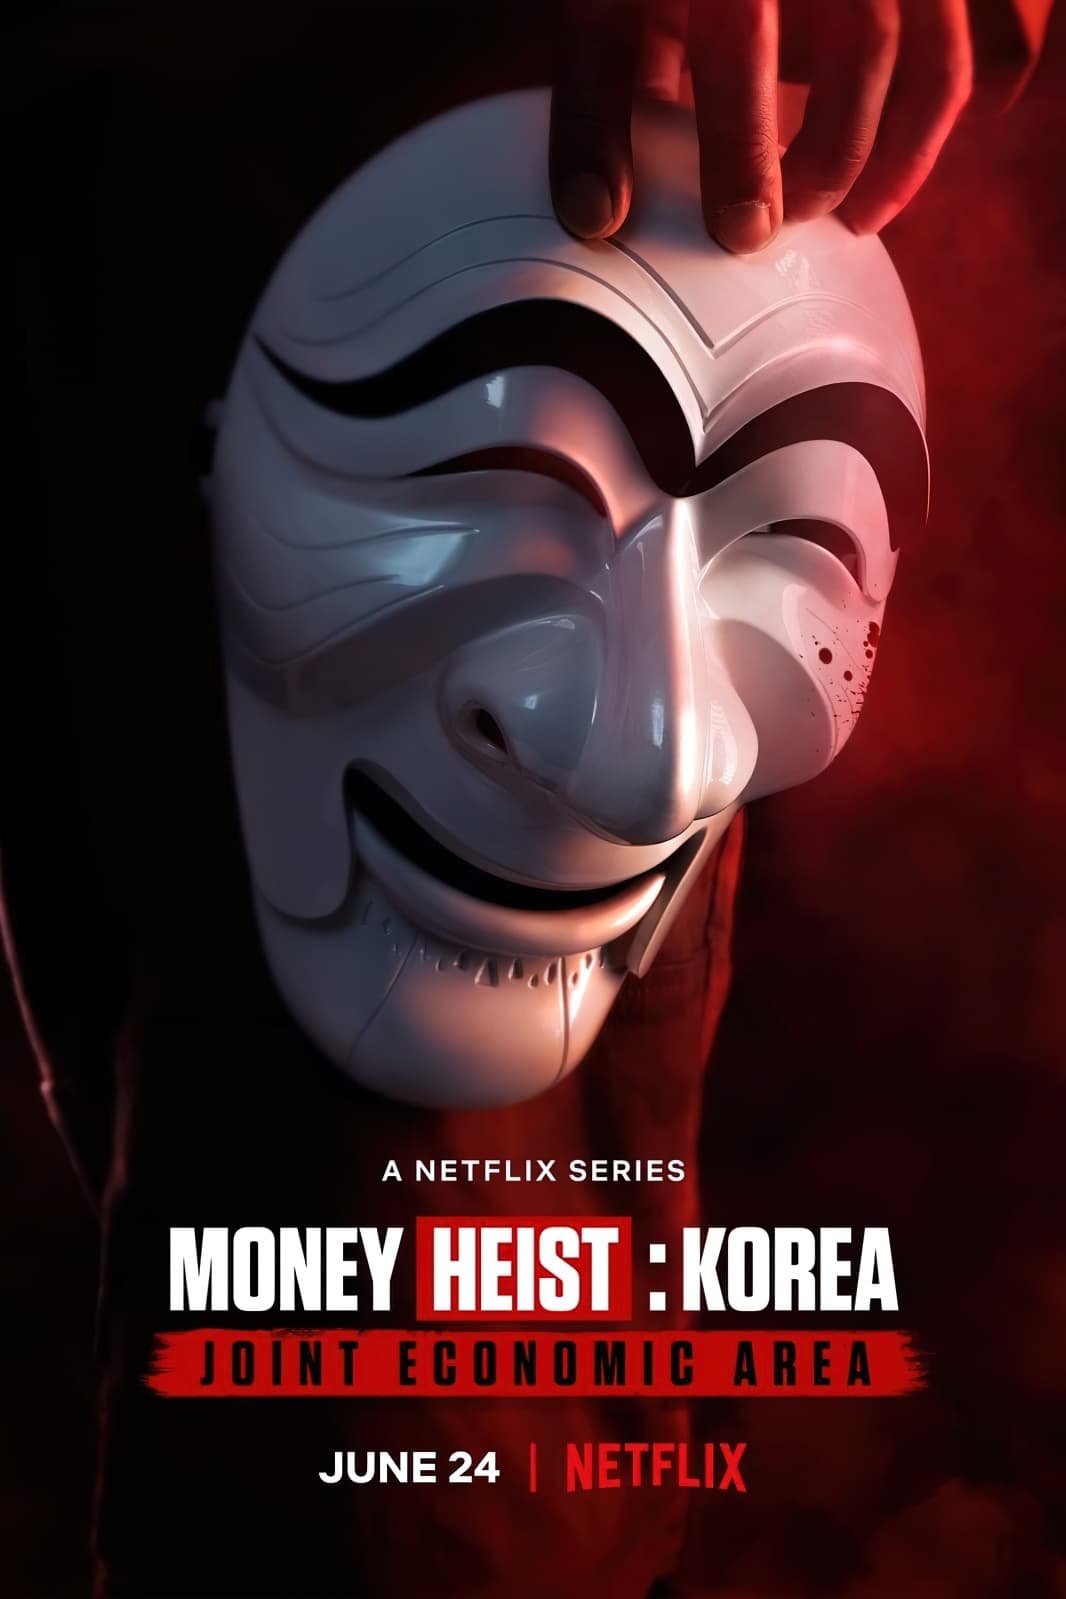 ดูหนังออนไลน์ฟรี Money Heist : Korea Joint Economic Area ทรชนคนปล้นโลก เกาหลีเดือด